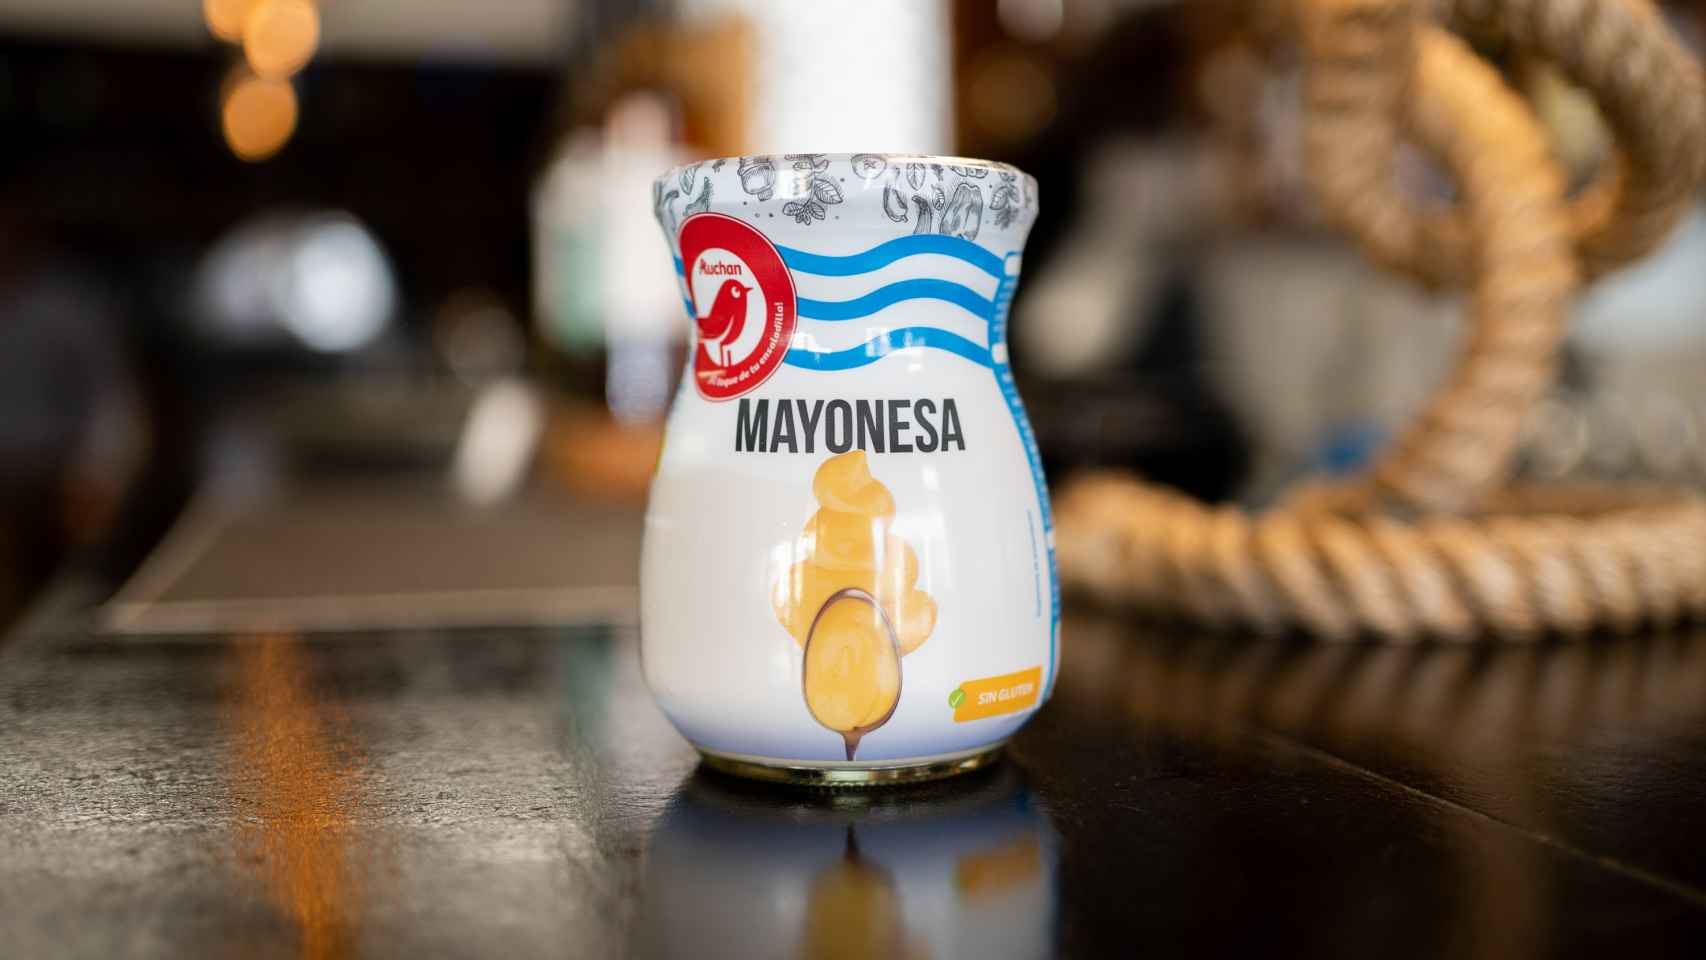 El bote de mayonesa de Auchan, la marca blanca de Alcampo.